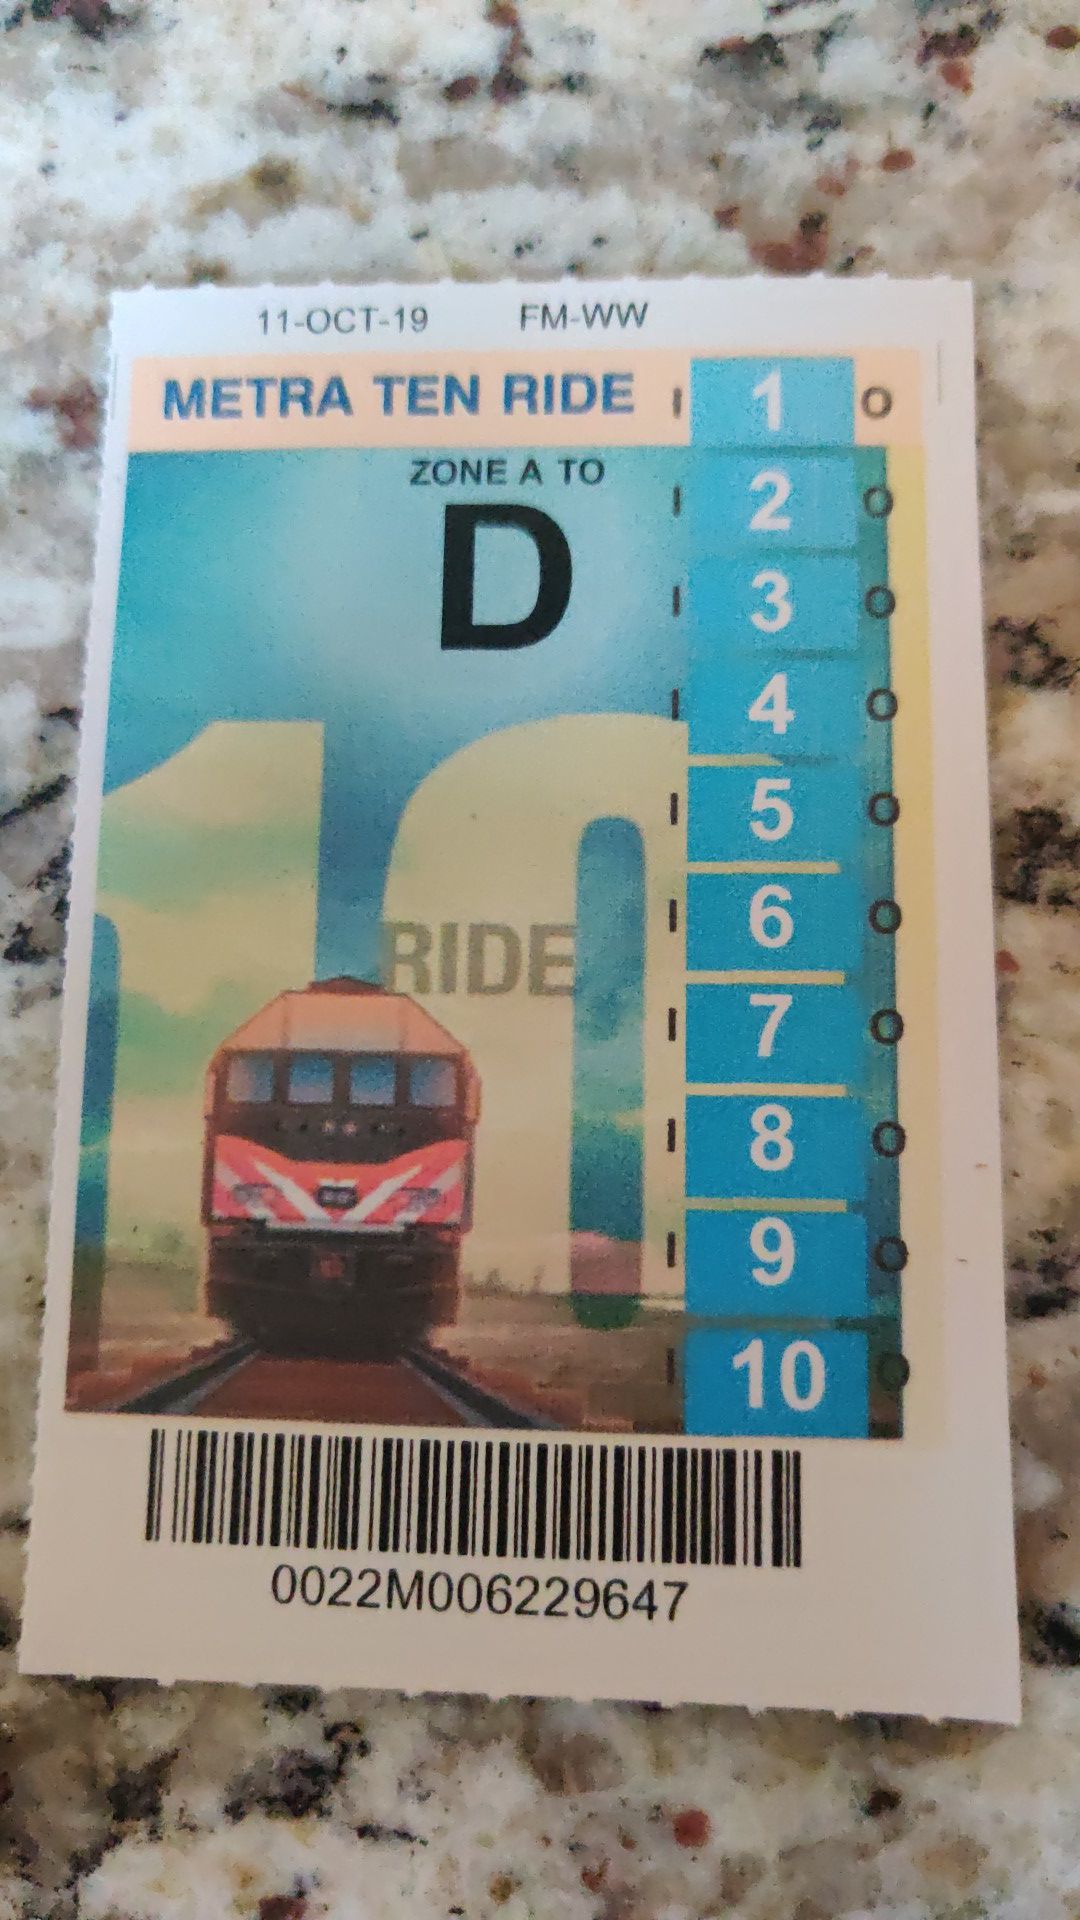 10 ride metra ticket